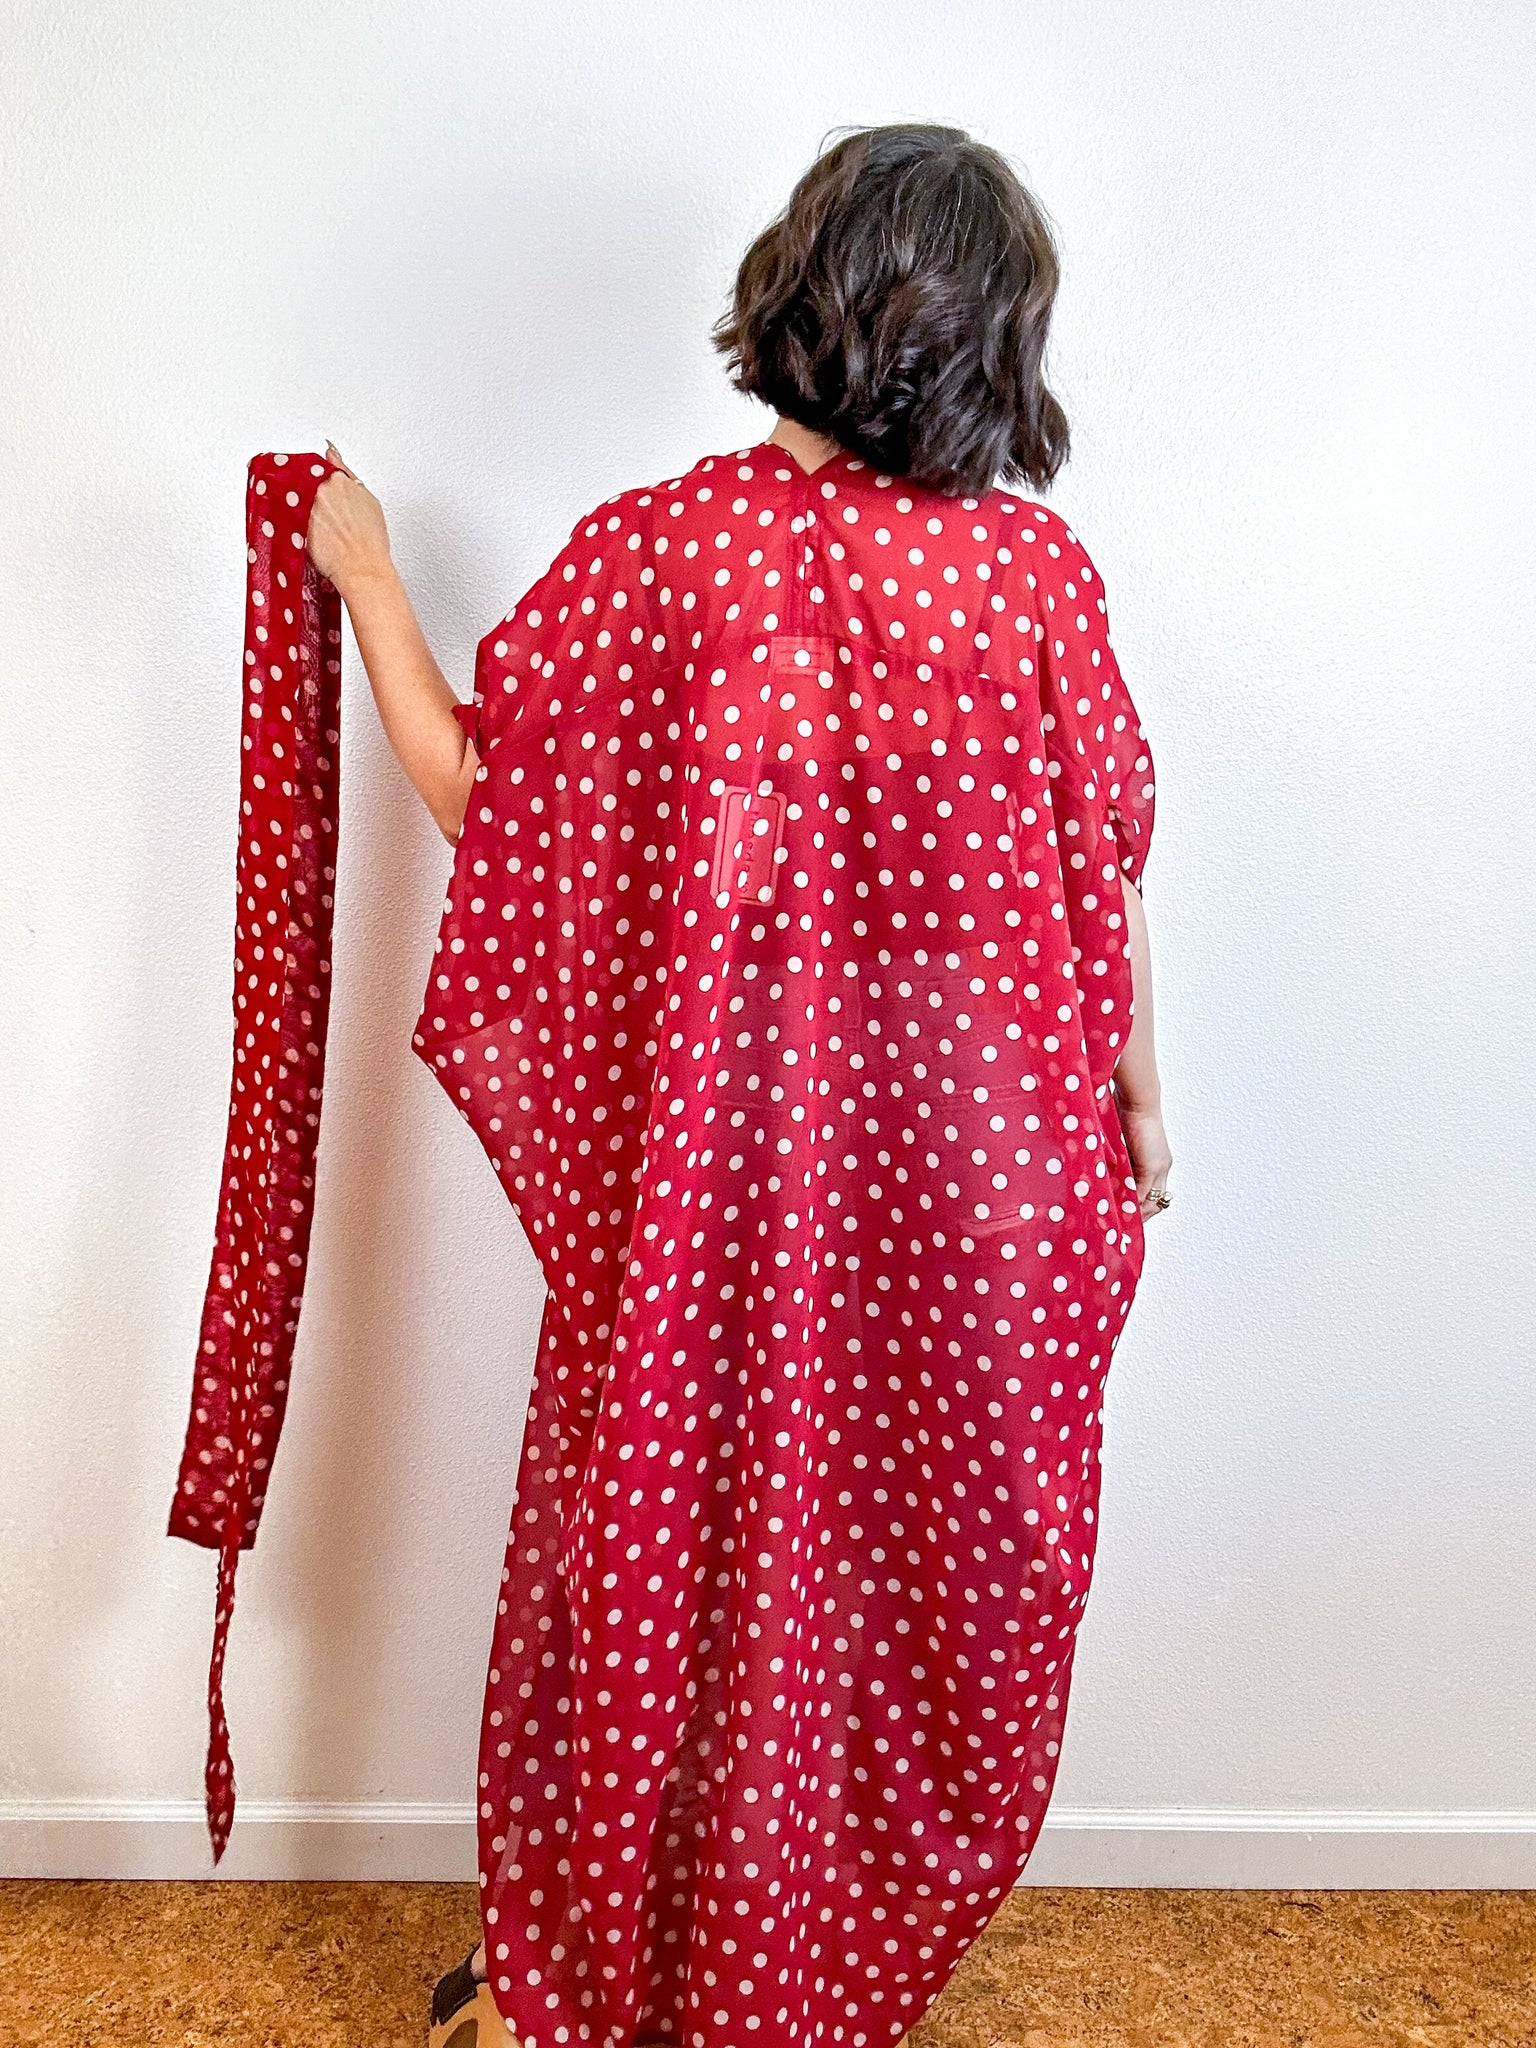 Print High Low Kimono Burgundy Blush Dots Chiffon